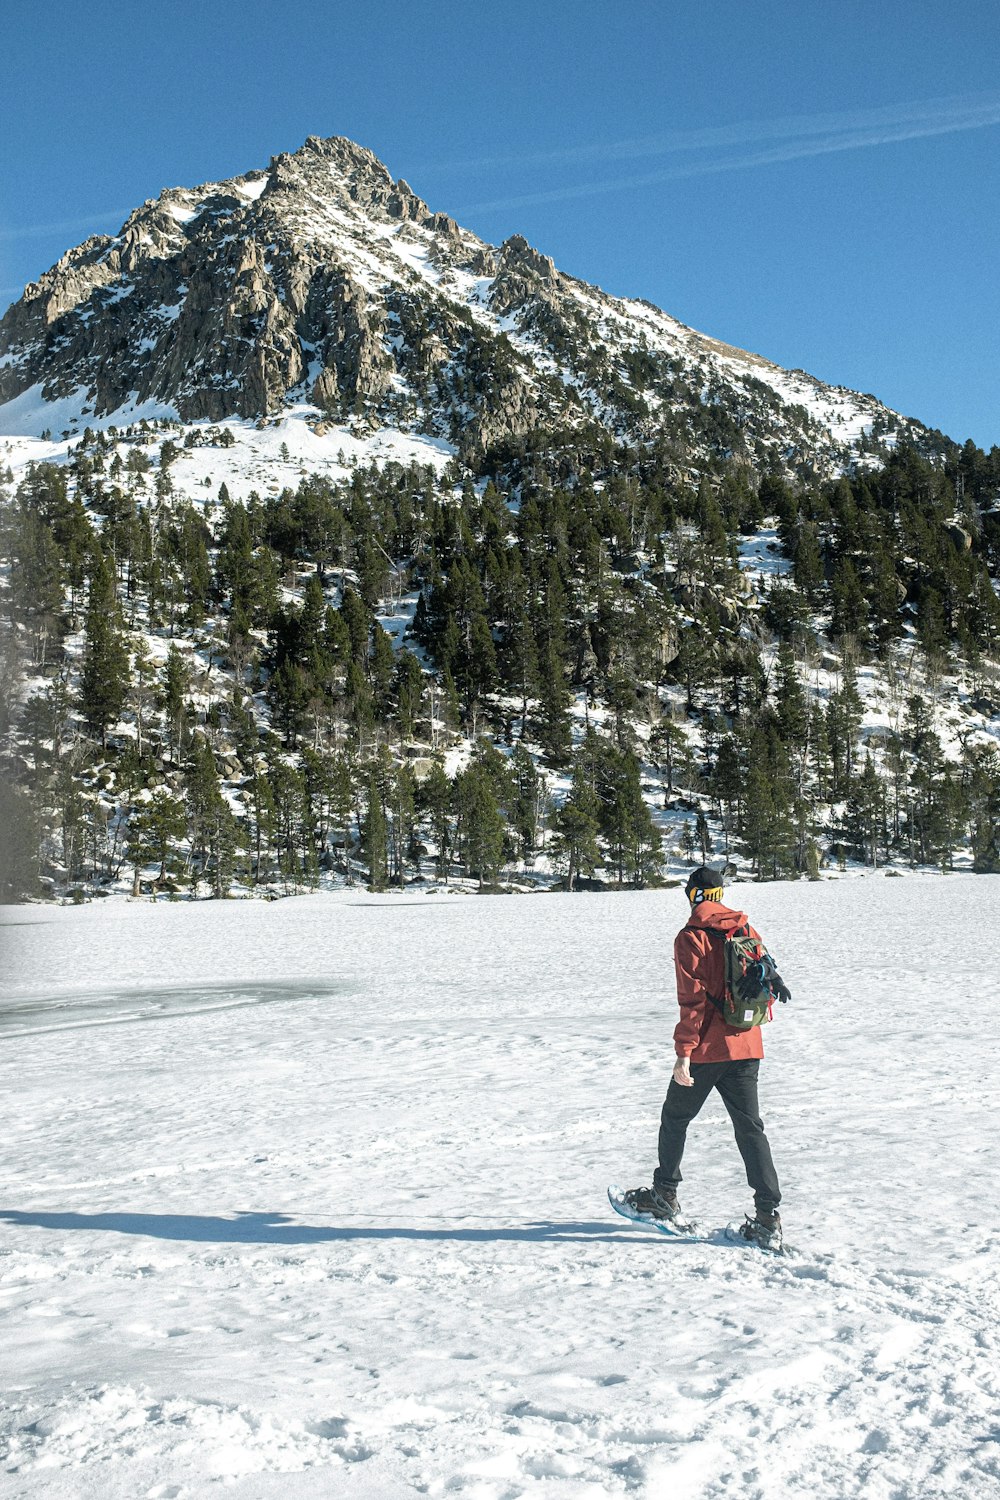 Person in roter Jacke und schwarzer Hose, die auf schneebedecktem Boden in der Nähe von grünen Bäumen steht und